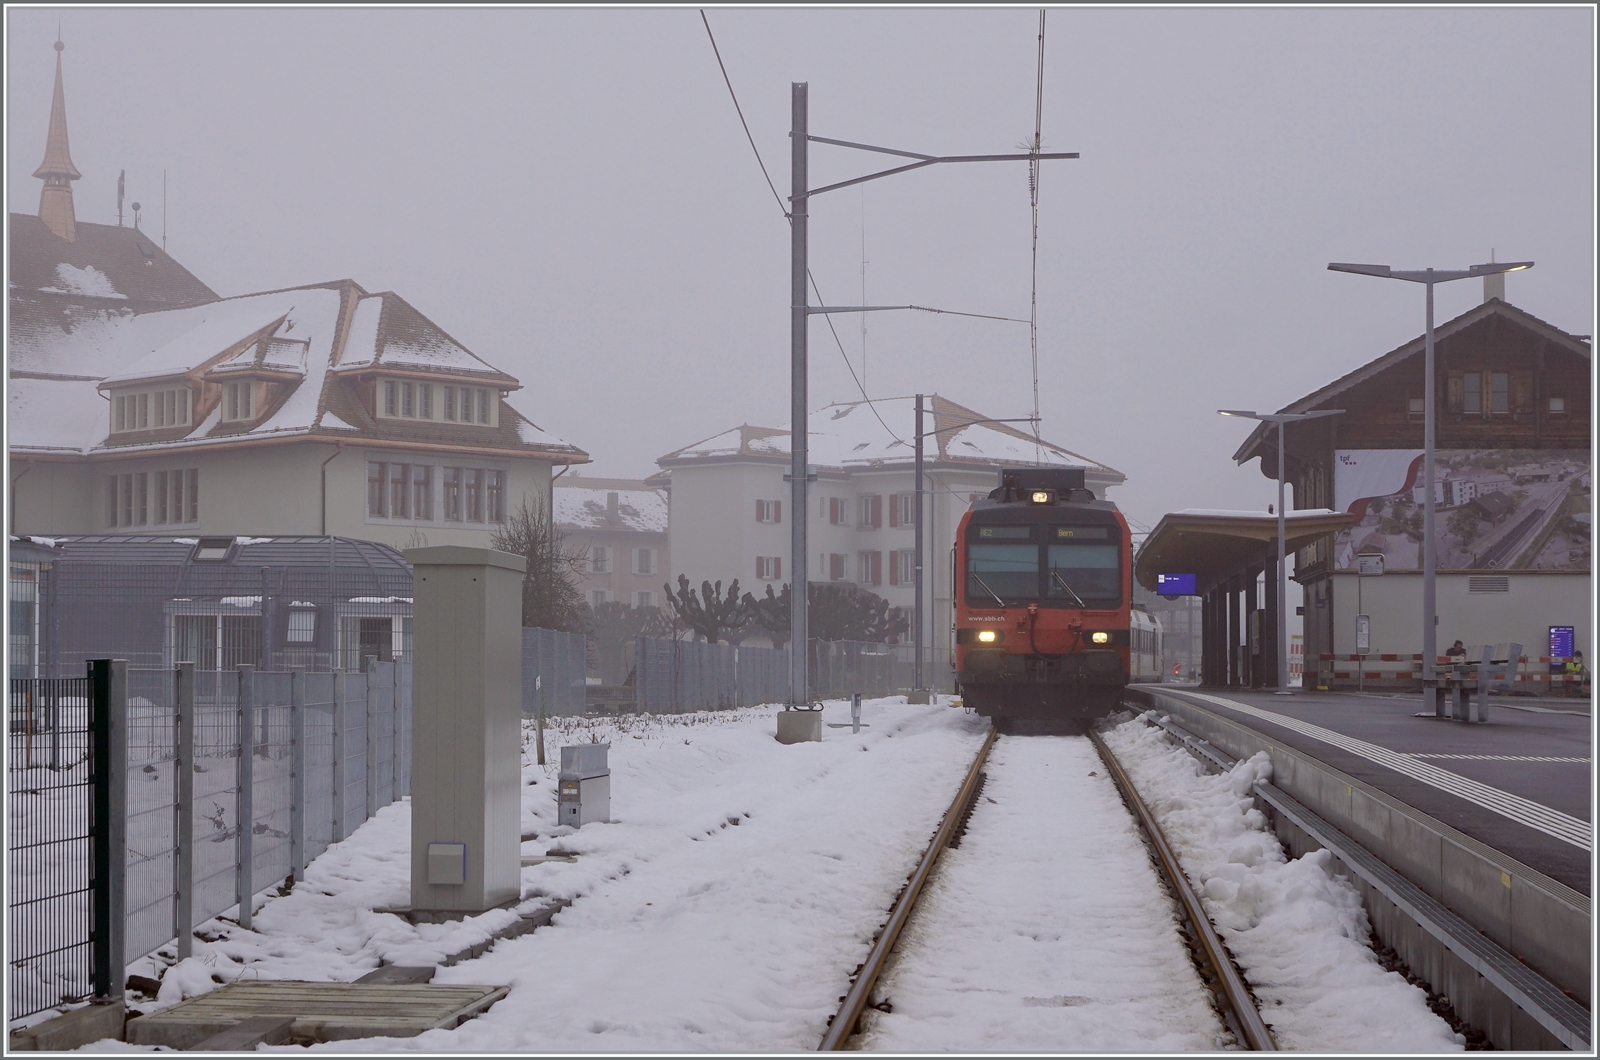 Fahrplanwechsel - In Zugausgangsbahnhof Broc Village wartet ein SBB Domino auf die Abfahrt nach Bern. 
Die Aufnahme entstand auf dem geöffneten Bahnübergang in Broc.- 

15. Dezember 2022